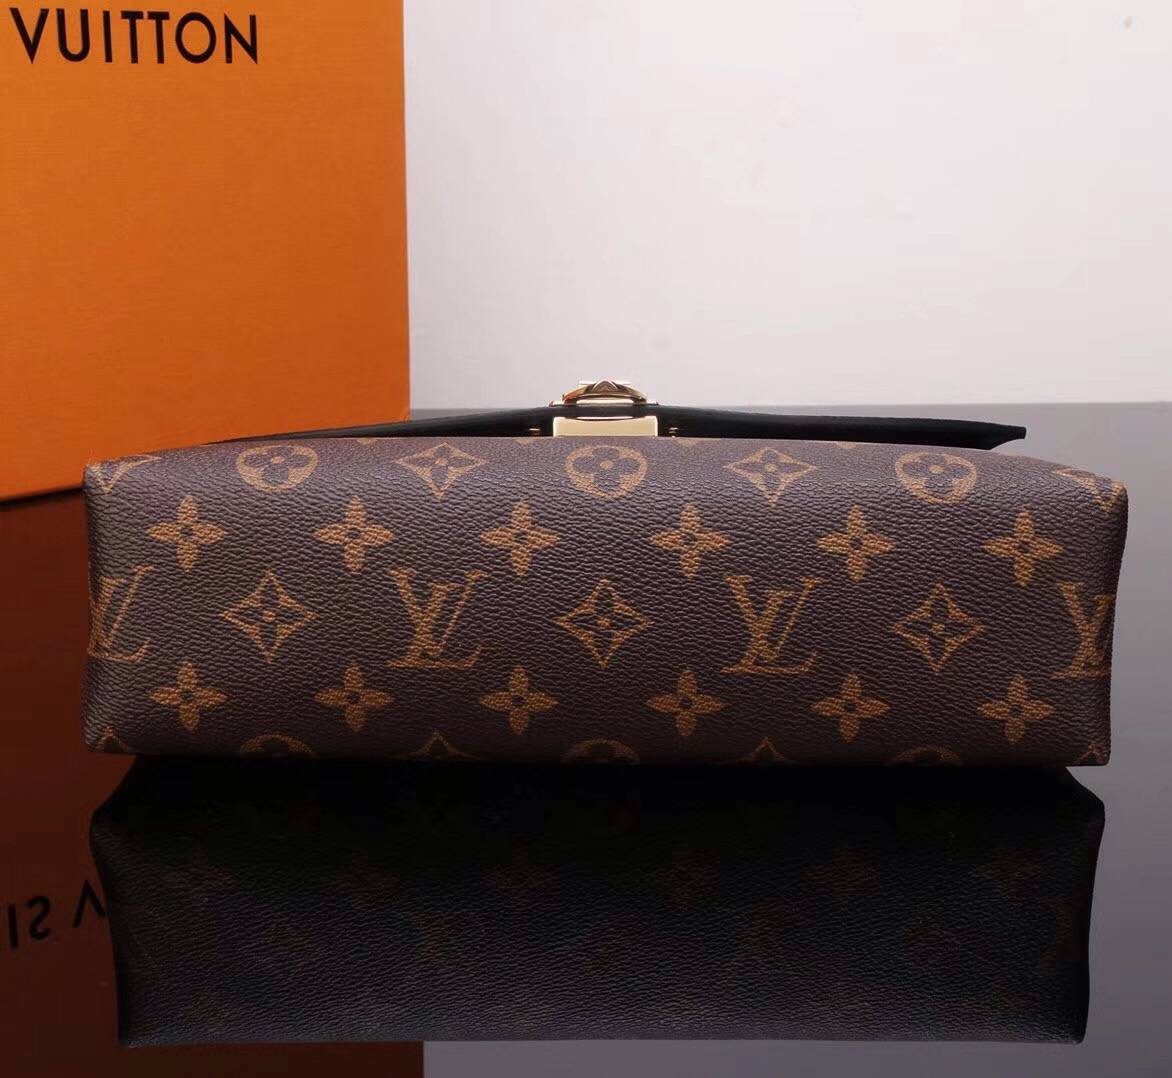 LV Louis Vuitton M43714 Saint Placide Leather Monogram Handbags bags Black